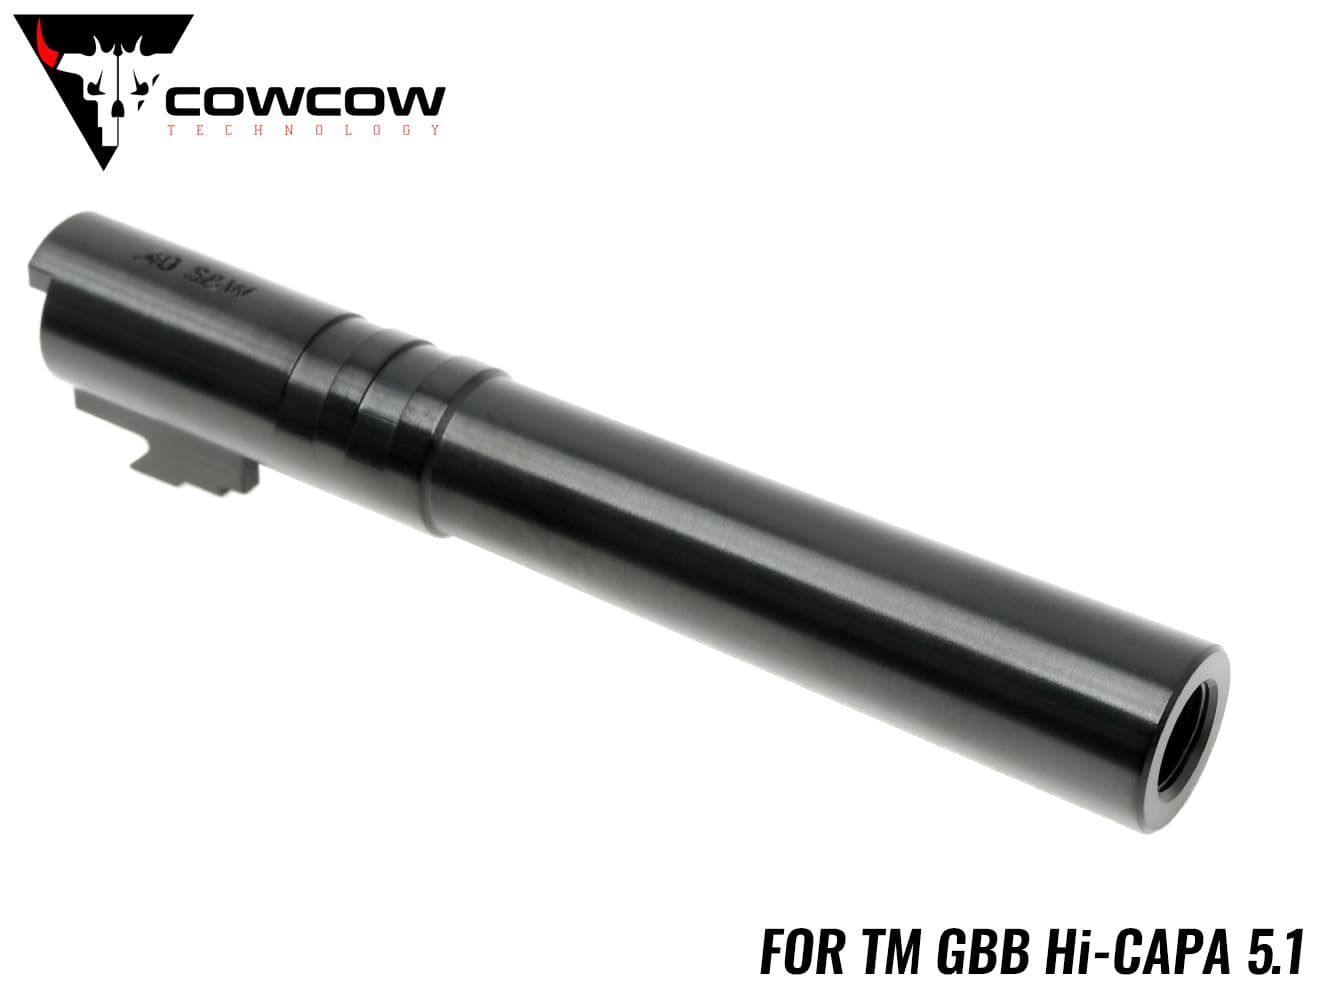 CCT-TMHC-011 COWCOW TECHNOLOGY OB1 ステンレス スレッドアウター